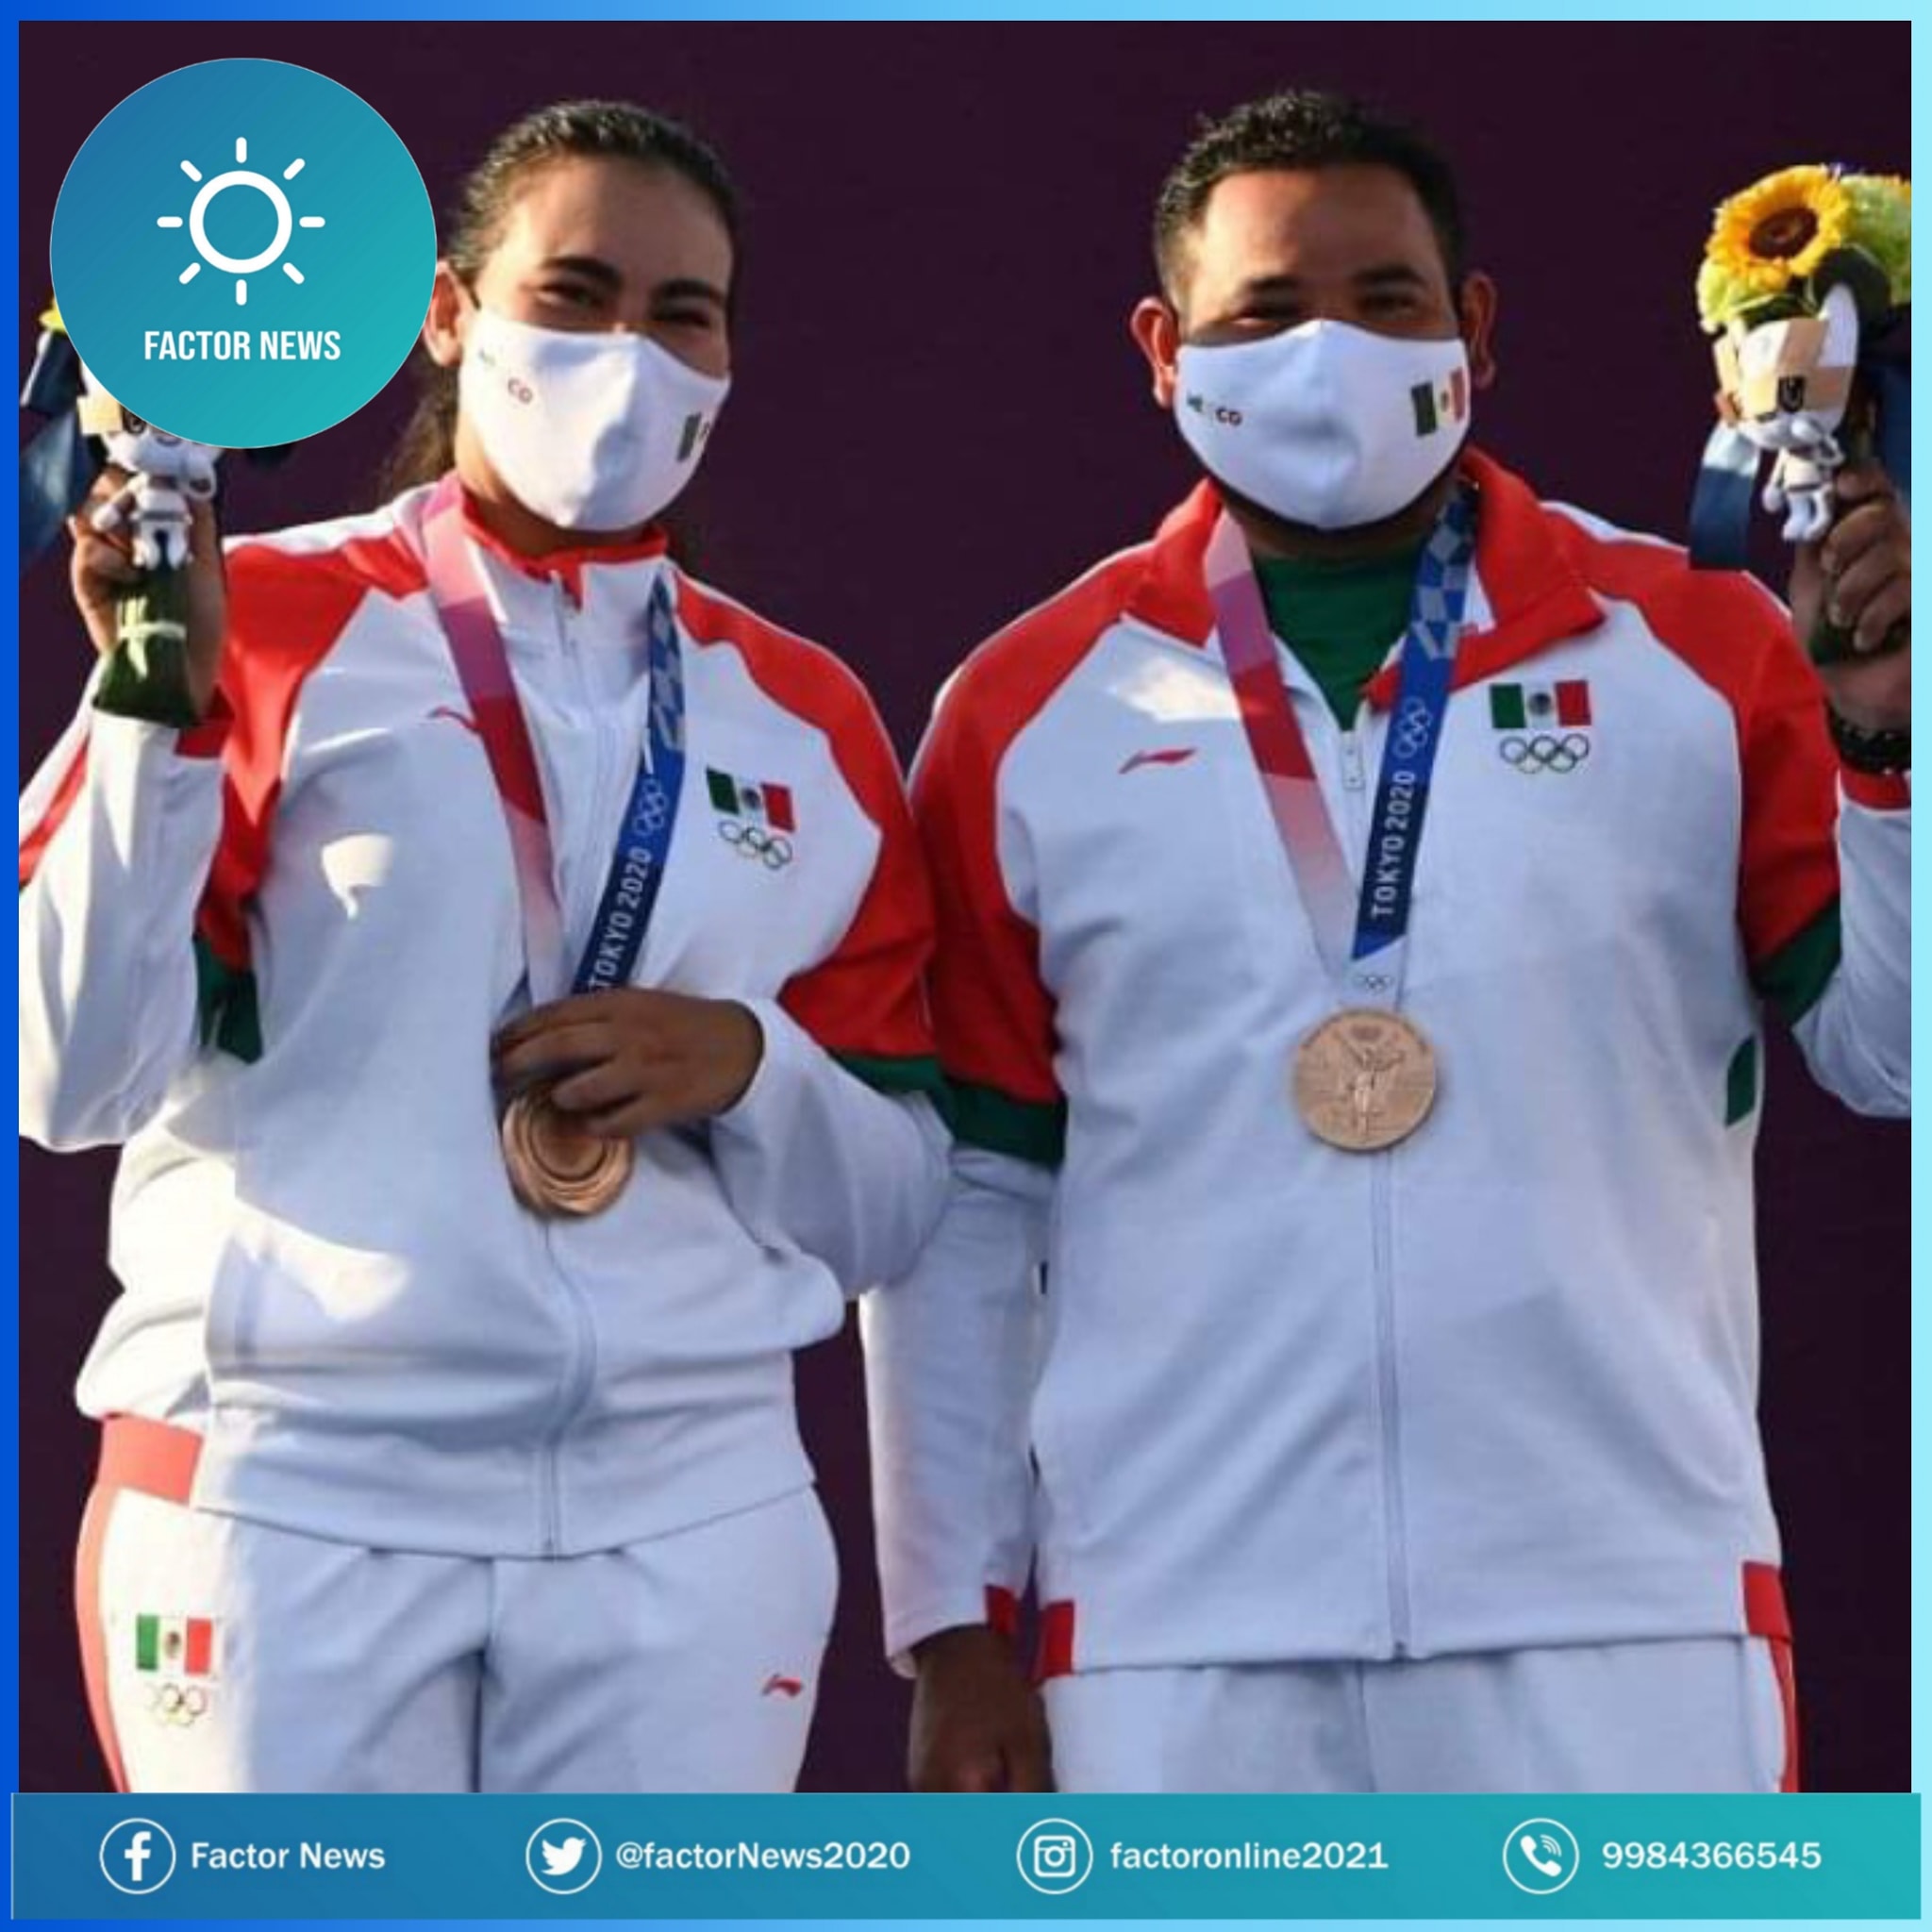 México es el primer país del continente americano que gana medalla en Tokio 2021.